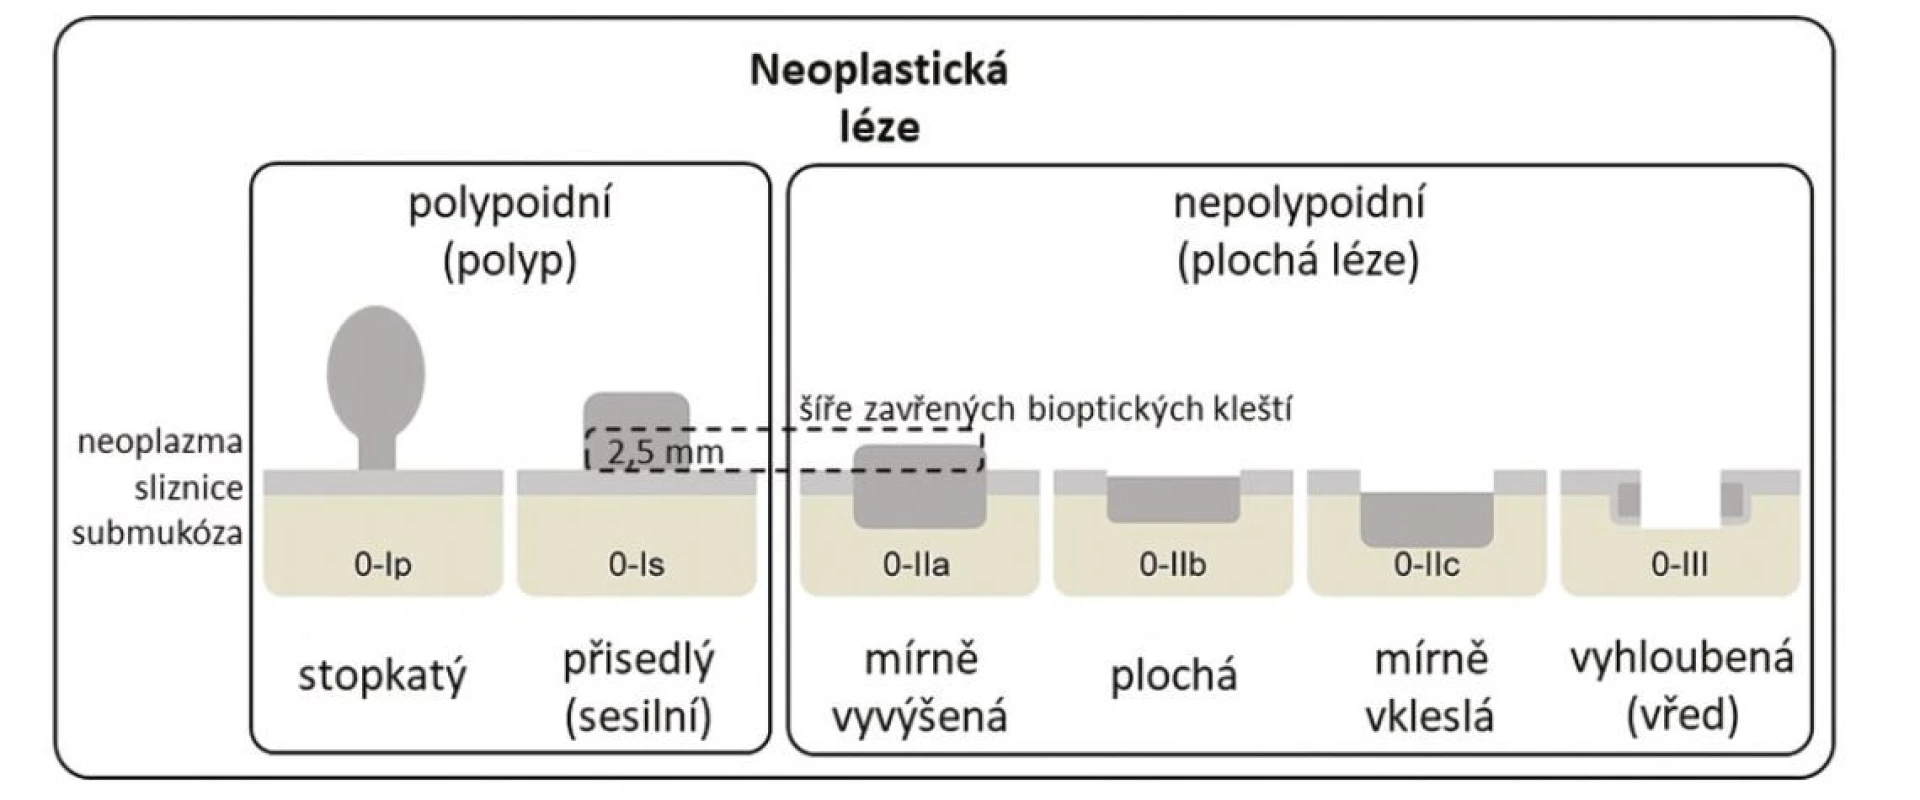 Pařížská klasifikace povrchových neoplastických lézí, upraveno podle (5)